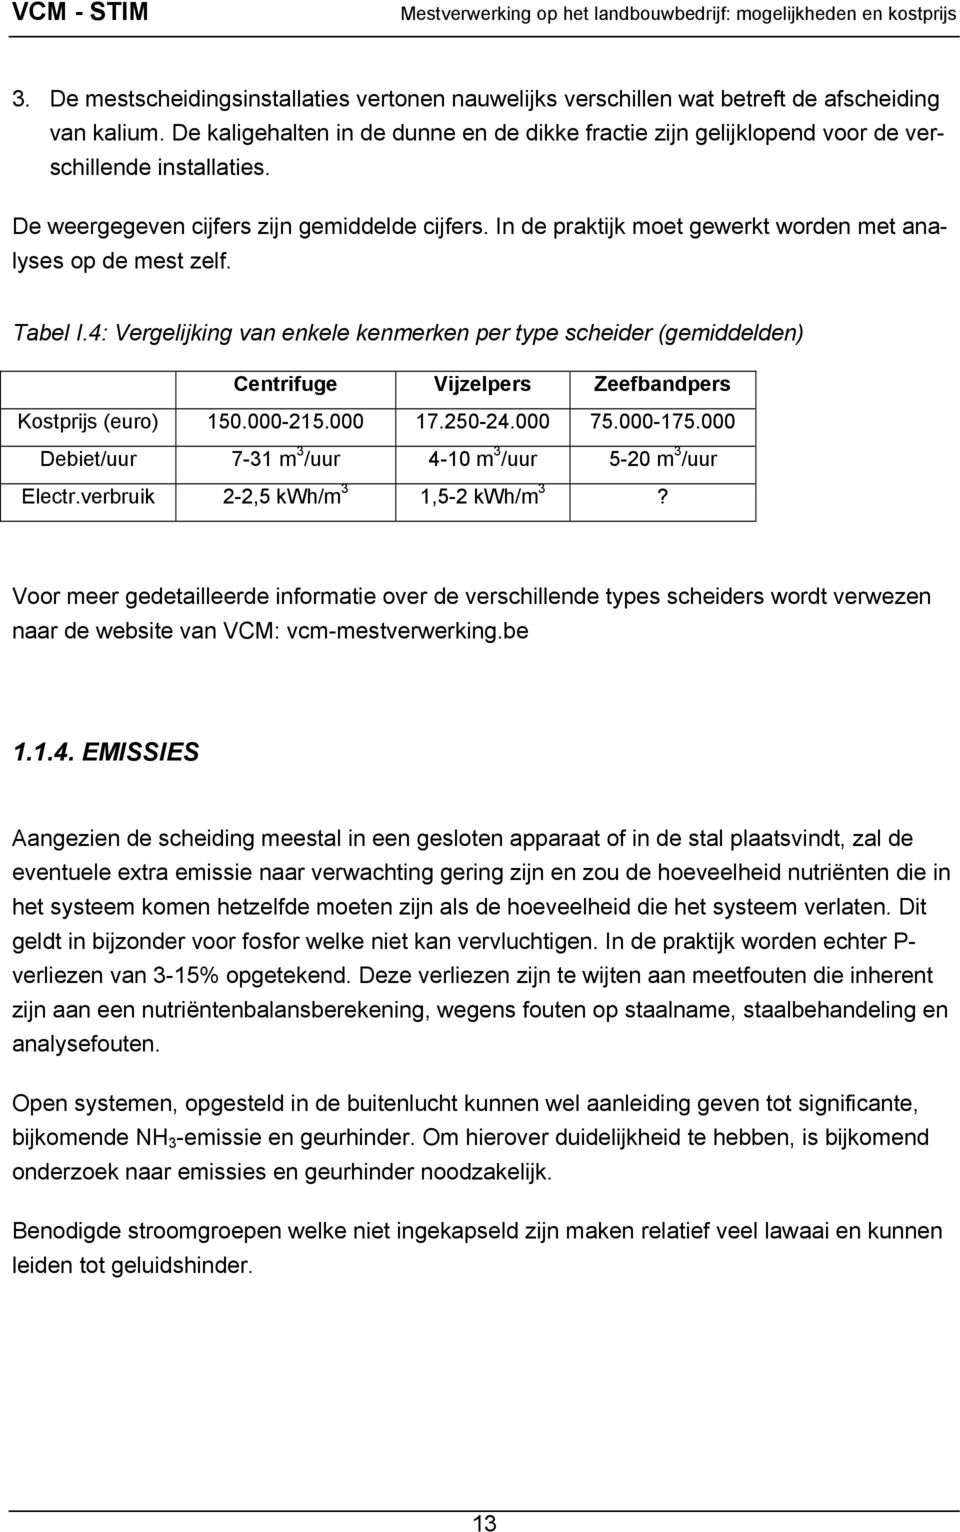 In de praktijk moet gewerkt worden met analyses op de mest zelf. Tabel I.4: Vergelijking van enkele kenmerken per type scheider (gemiddelden) Centrifuge Vijzelpers Zeefbandpers Kostprijs (euro) 150.